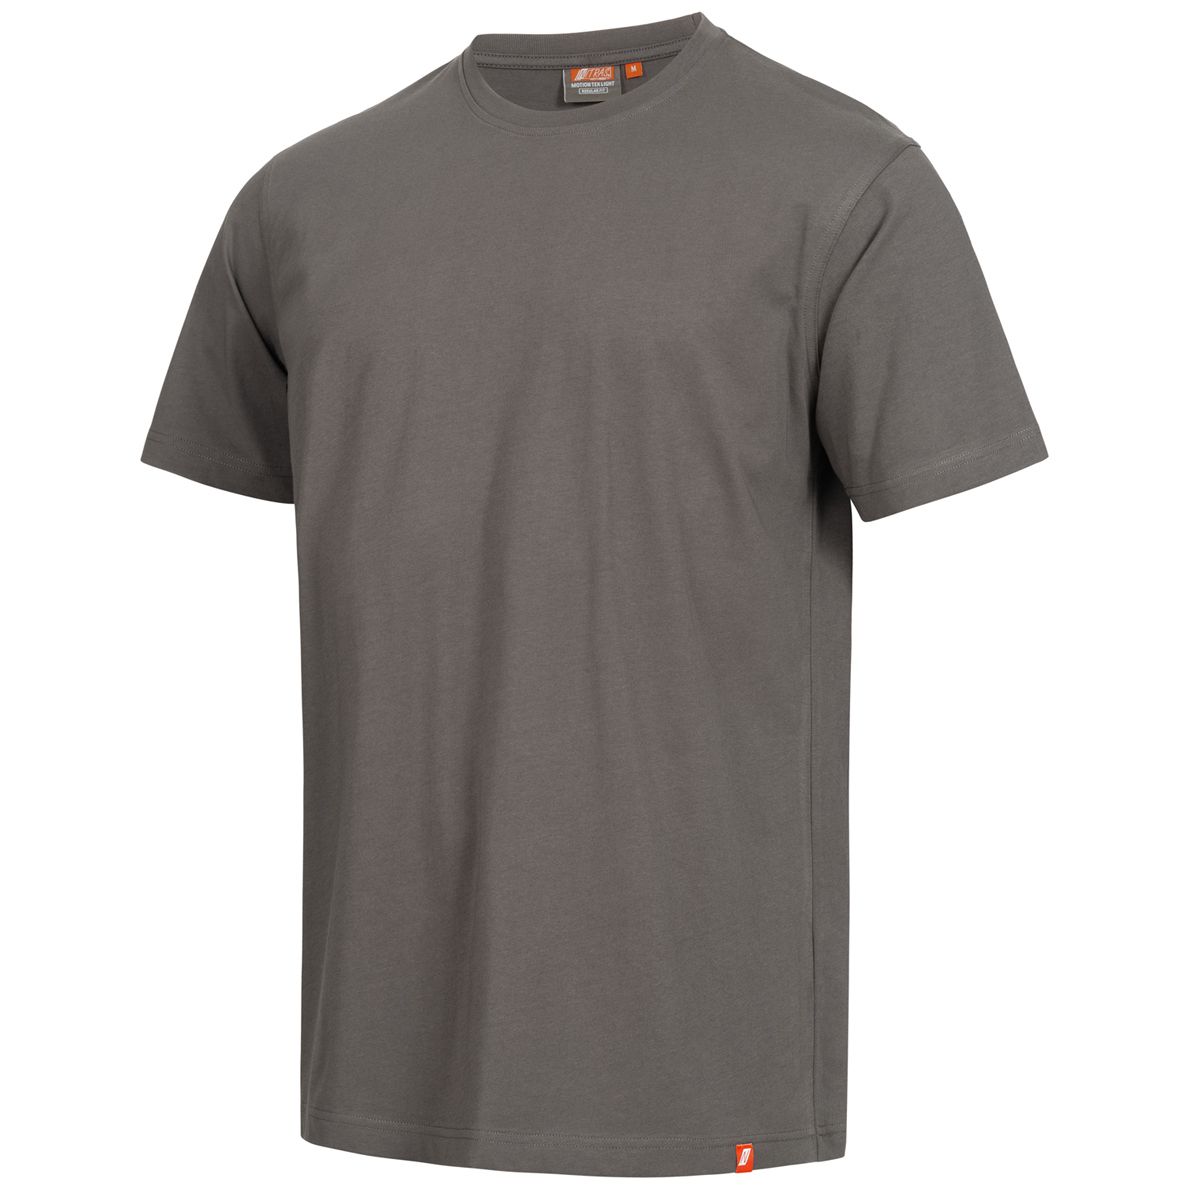 NITRAS MOTION TEX LIGHT Arbeits-T-Shirt - Kurzarm-Hemd aus 100% Baumwolle - für die Arbeit - Grau - XL